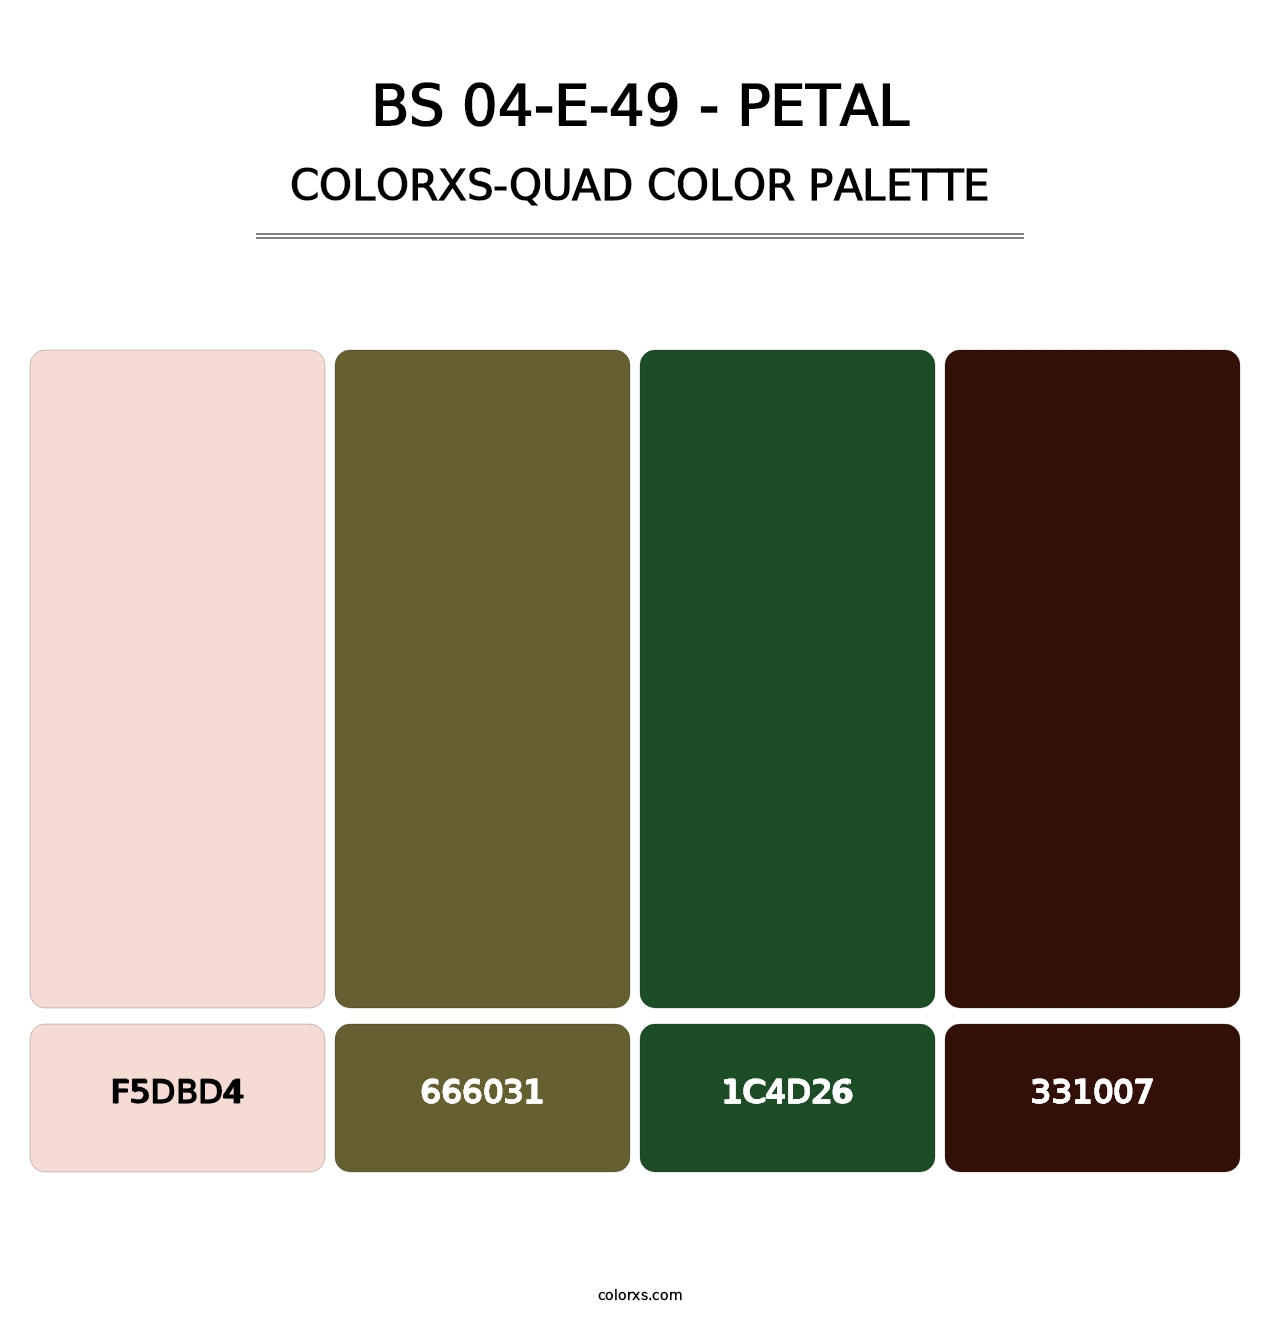 BS 04-E-49 - Petal - Colorxs Quad Palette